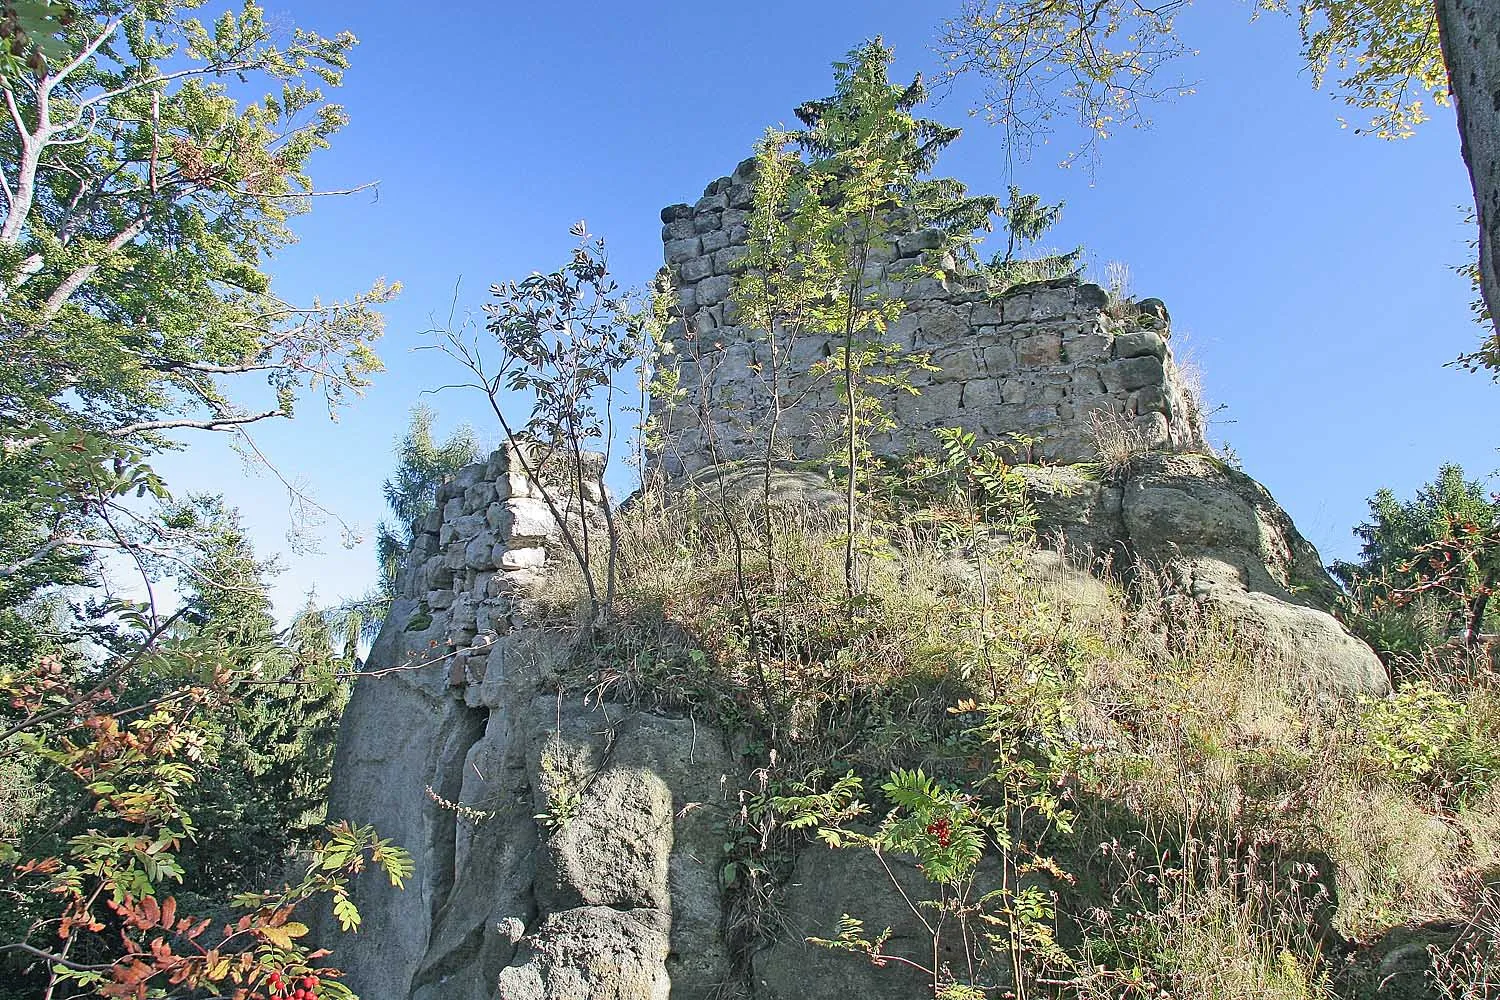 Photo showing: Ruine der Burg Karlsfried near Town Zittau in Sachsen, Germany
autor: Prazak

date: 22. 9. 2006